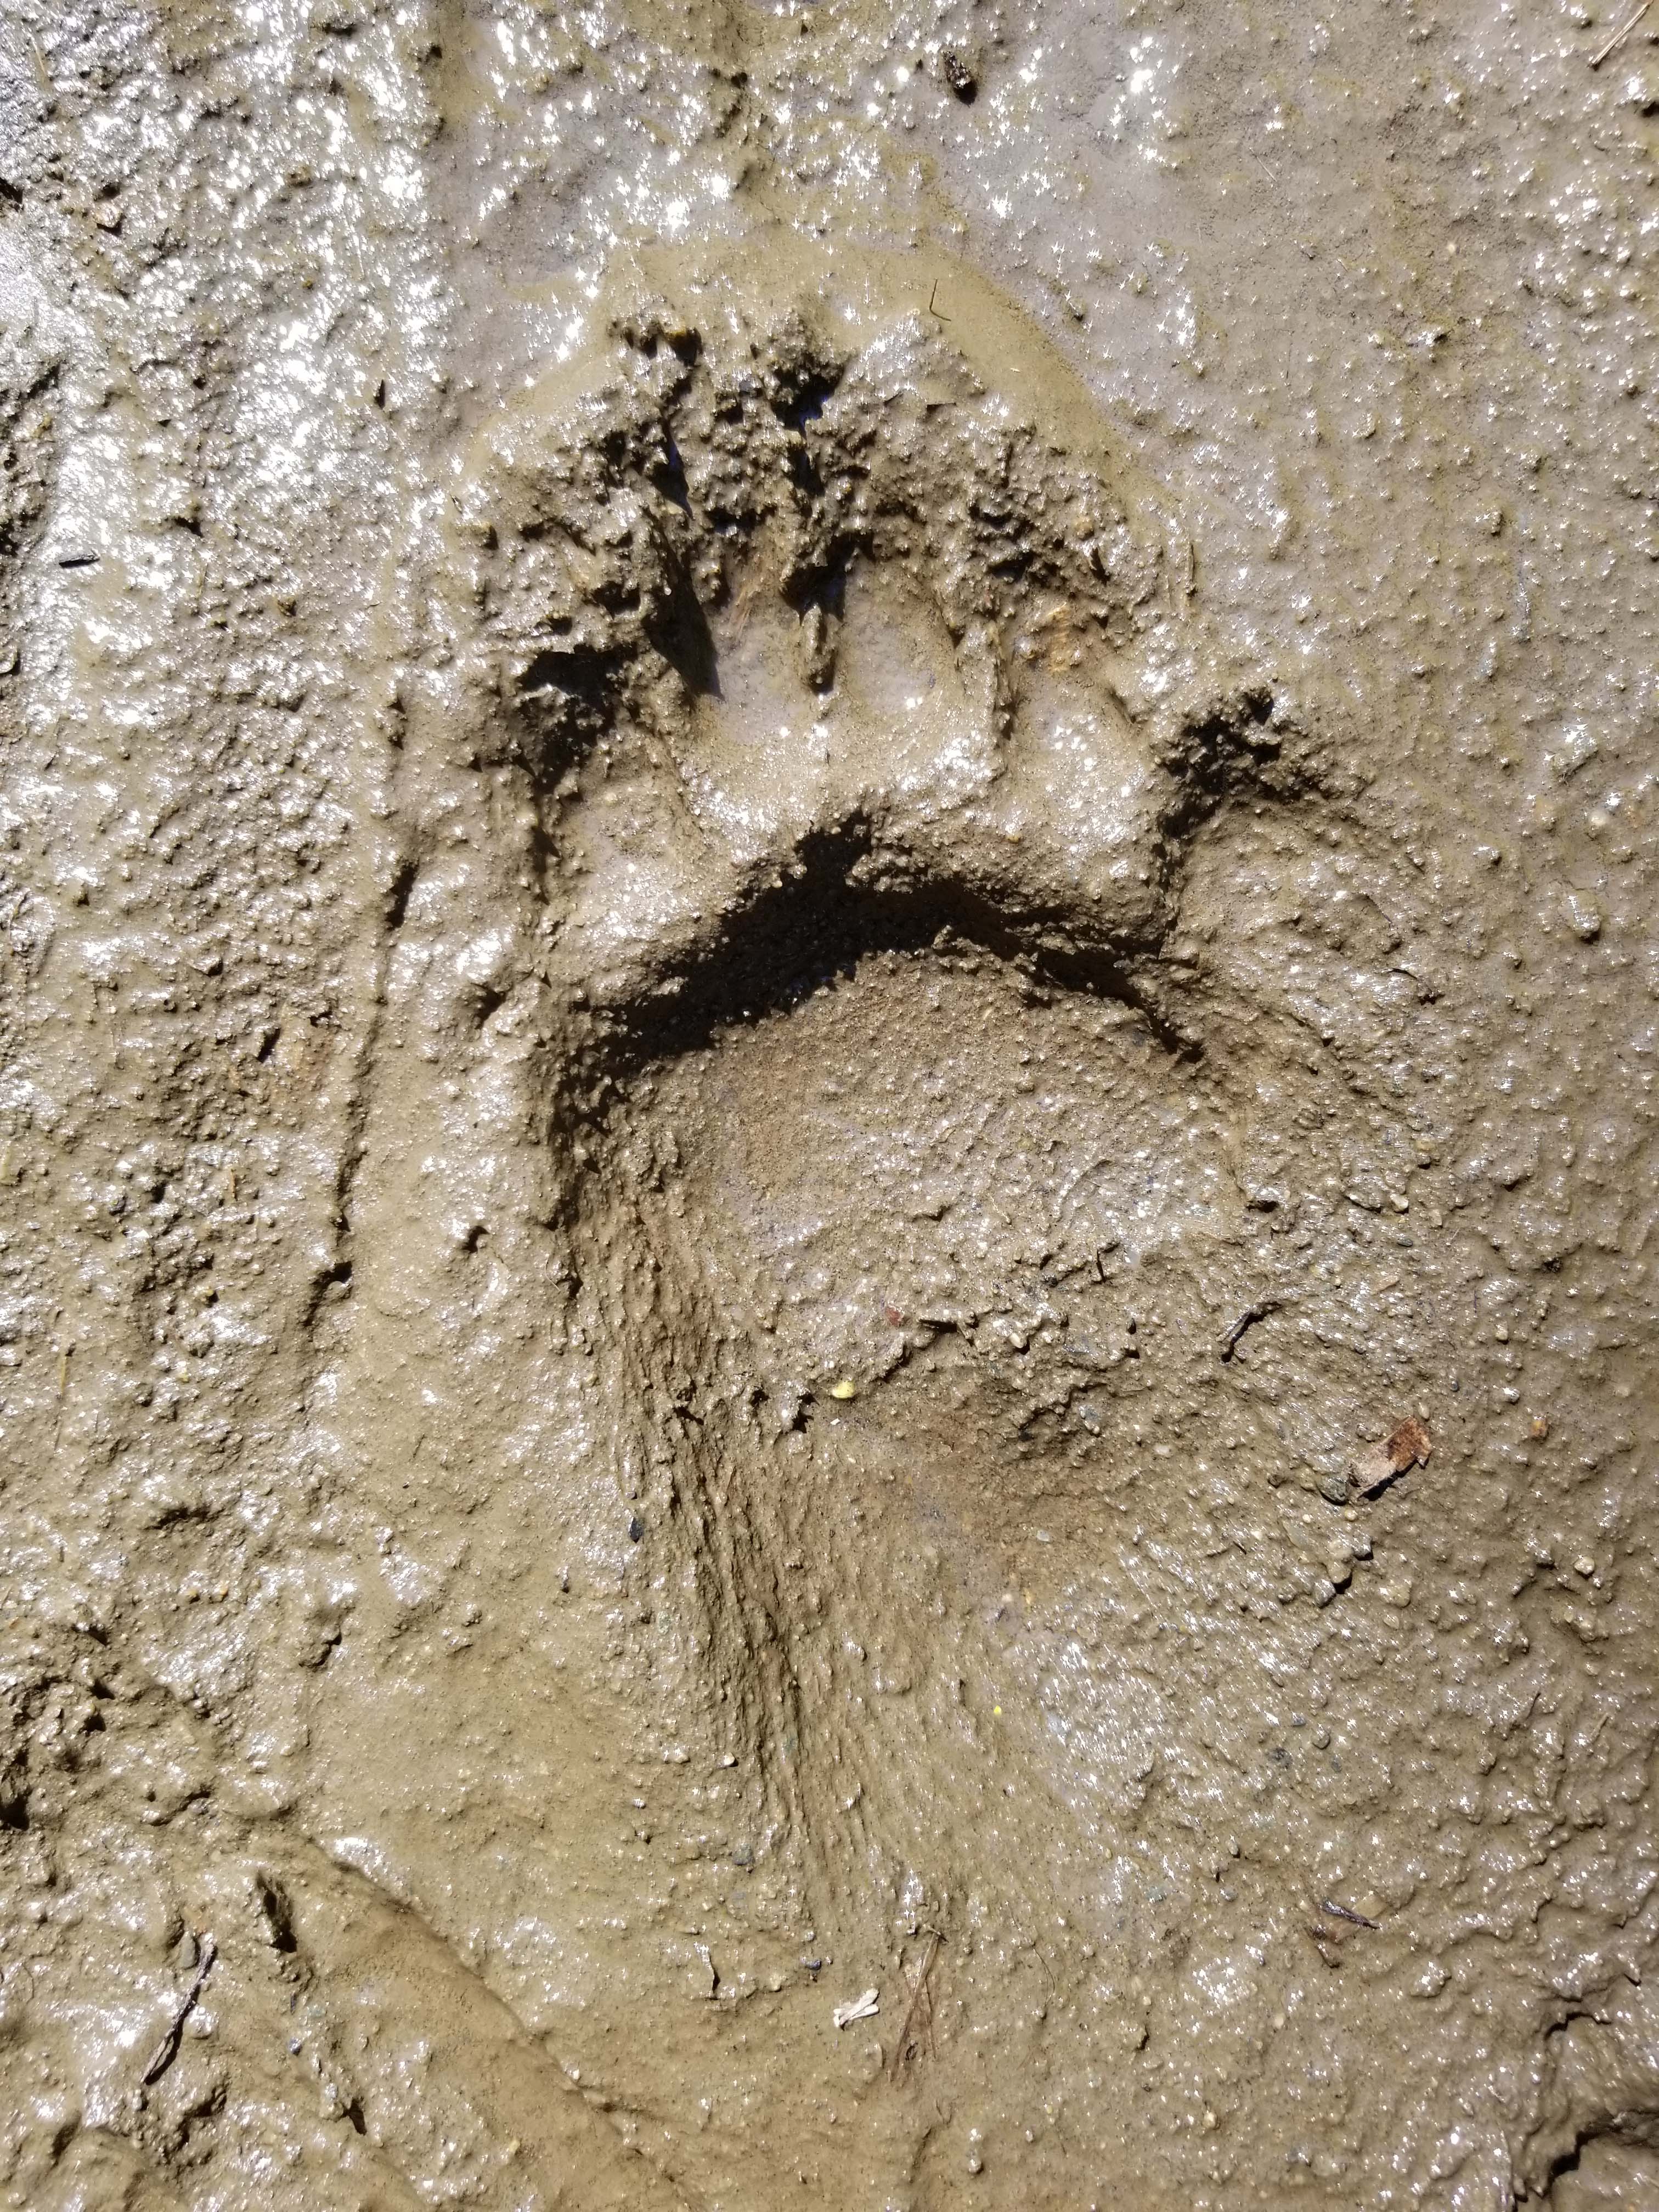 Bear footprint.